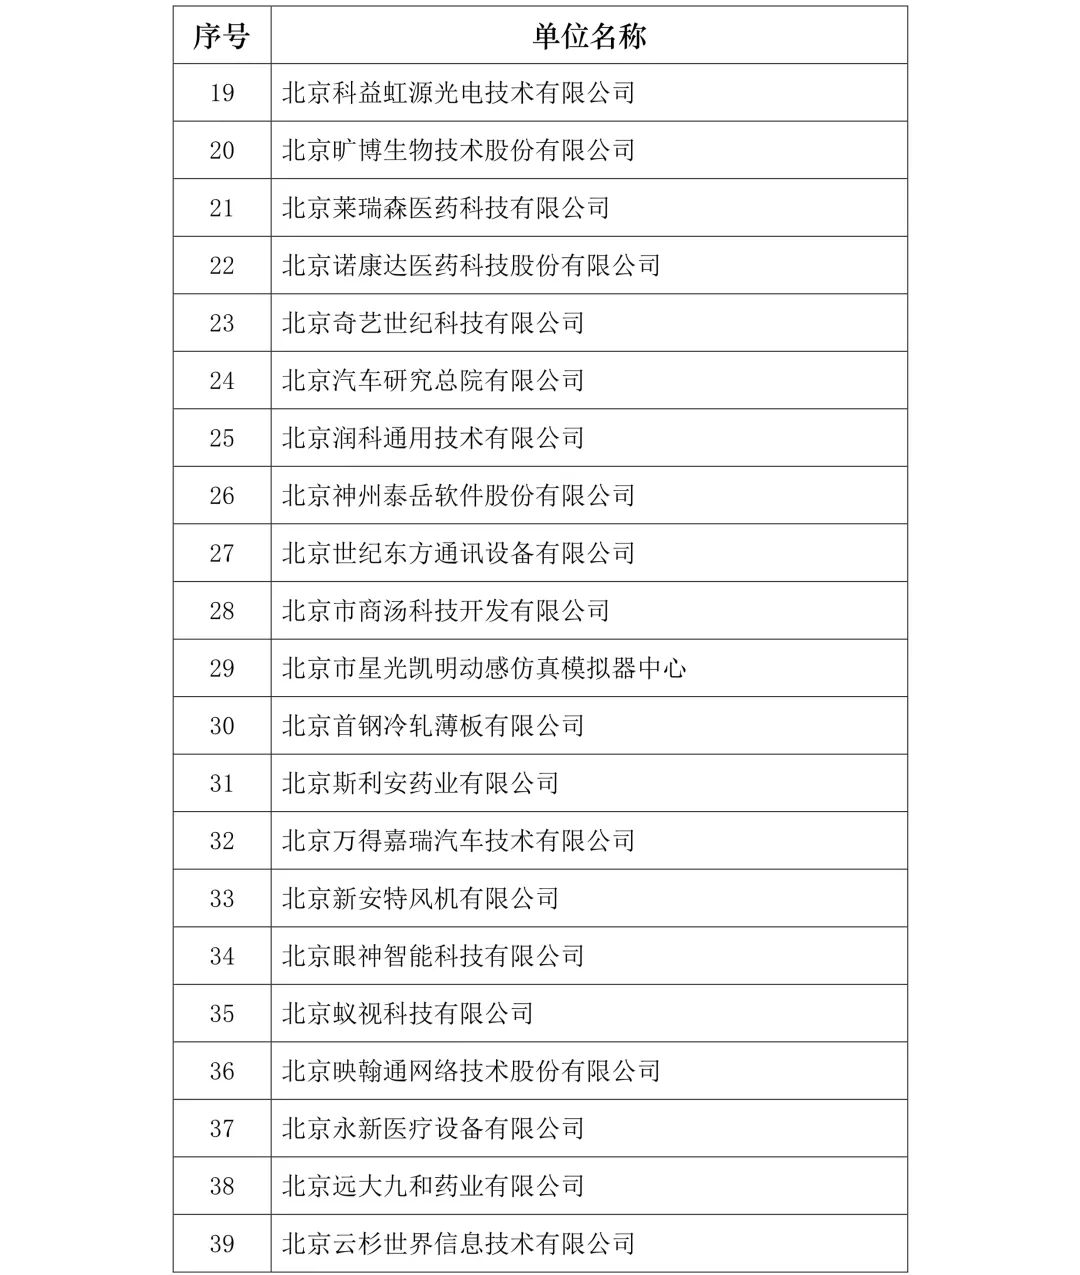 刚刚！2019年度北京市知识产权试点示范单位名单公布（313家）